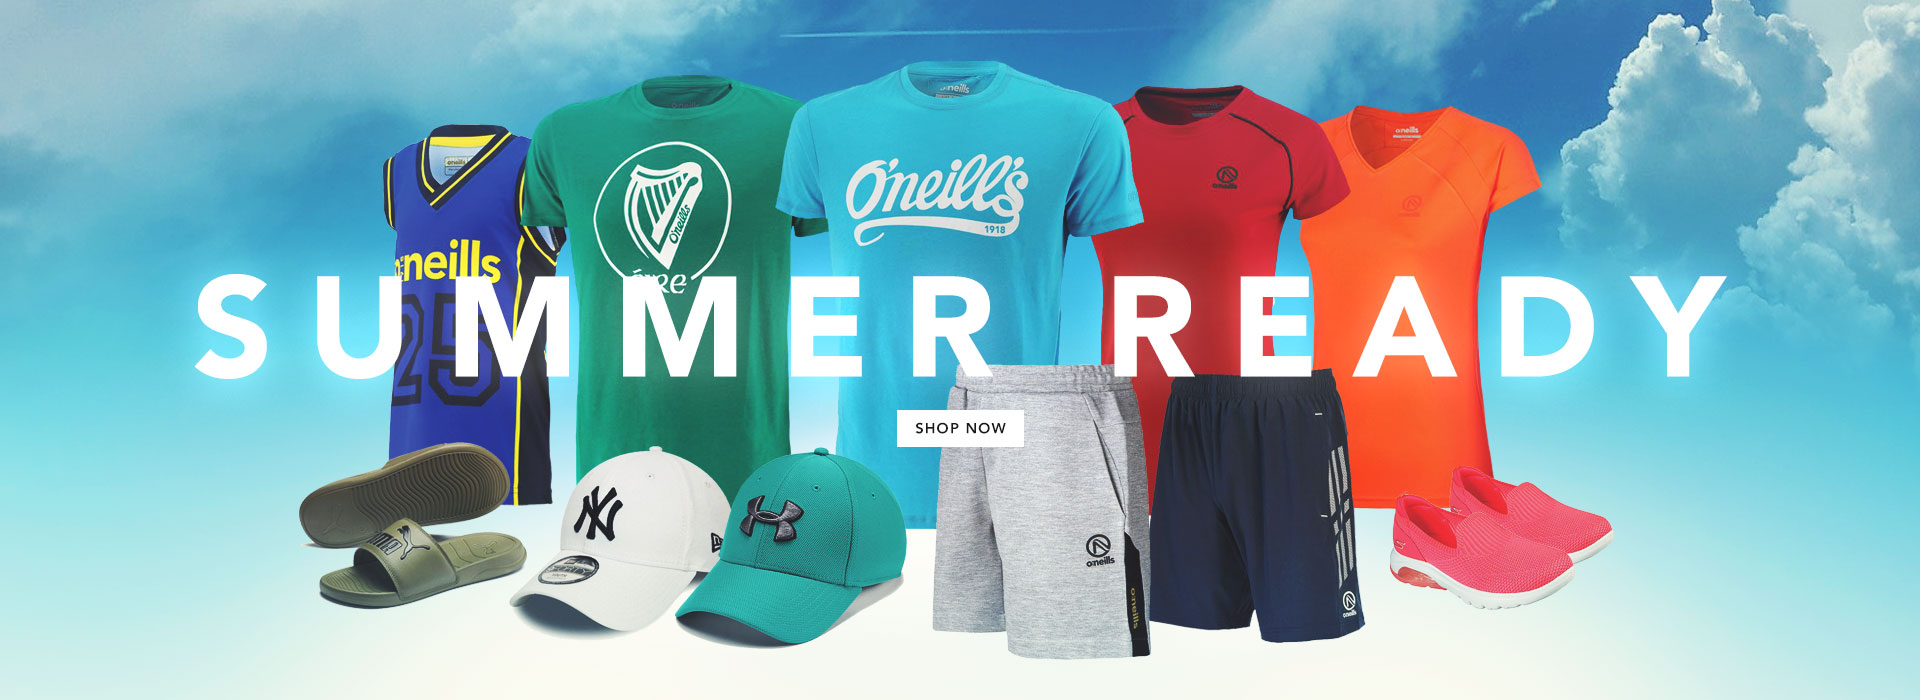 champion sportswear online store